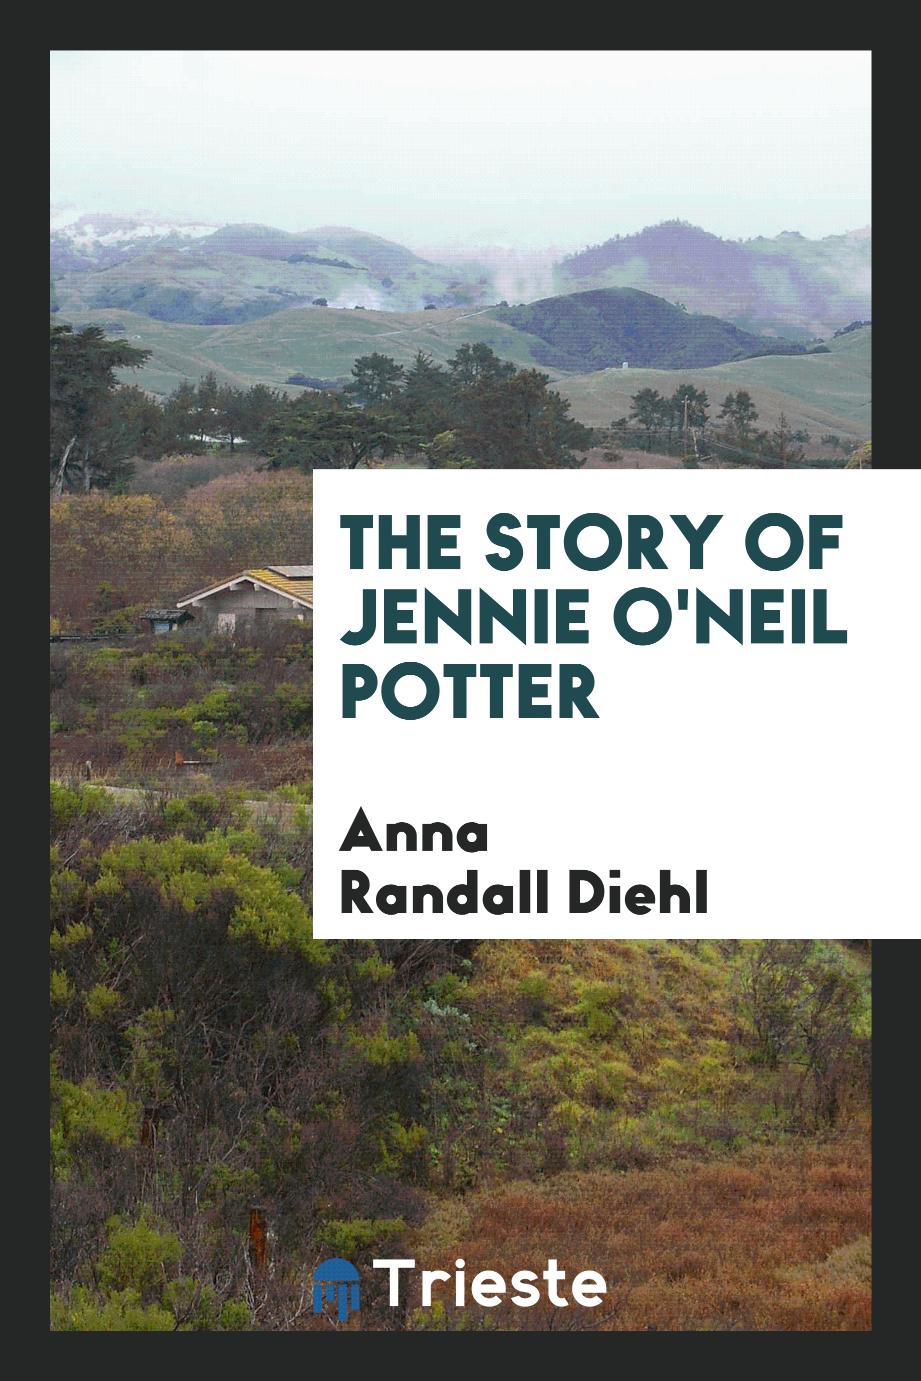 The story of Jennie O'Neil Potter